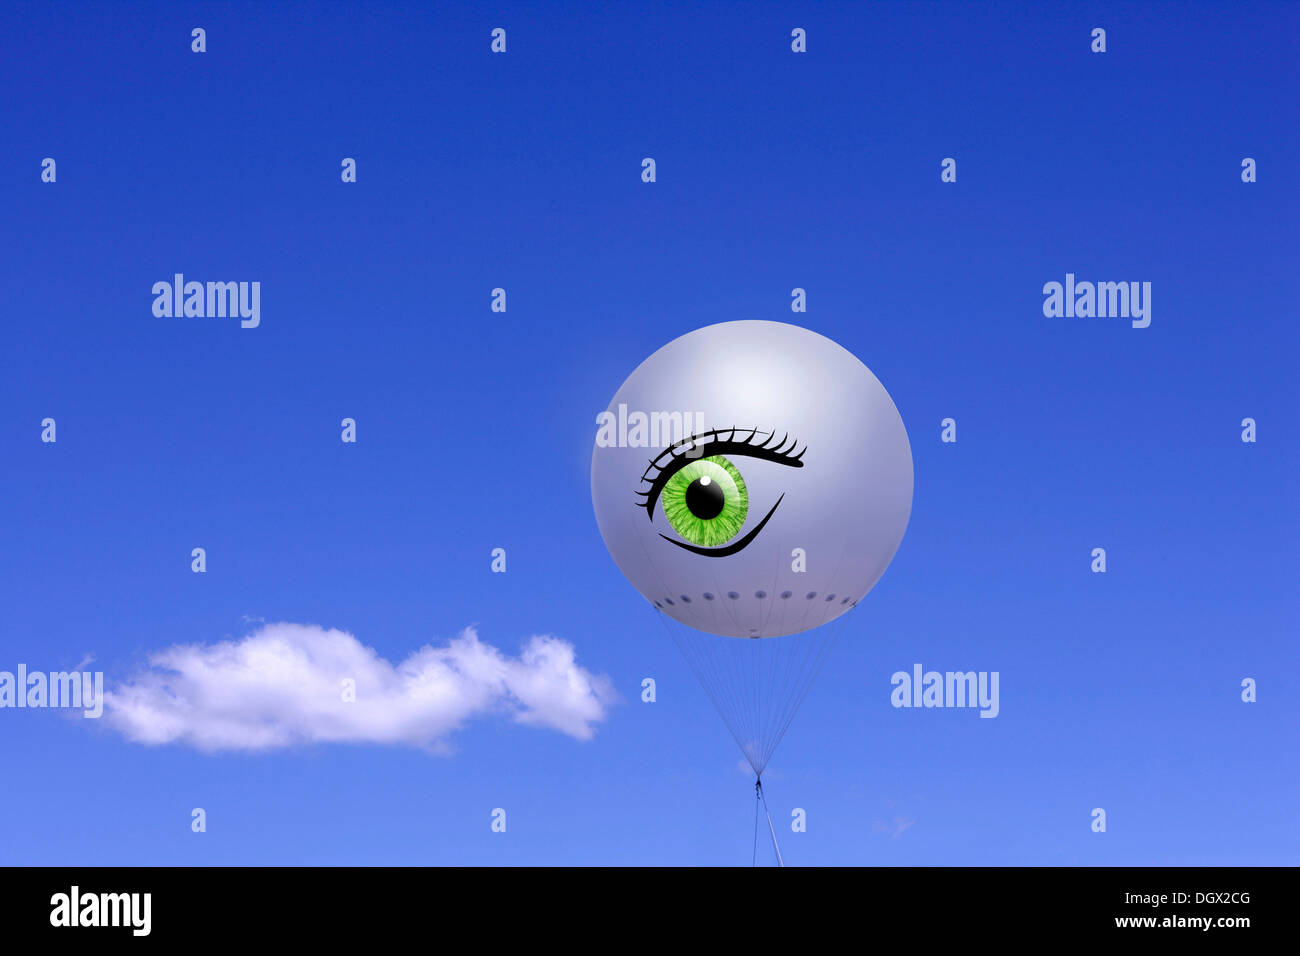 Occhio nuvola immagini e fotografie stock ad alta risoluzione - Alamy